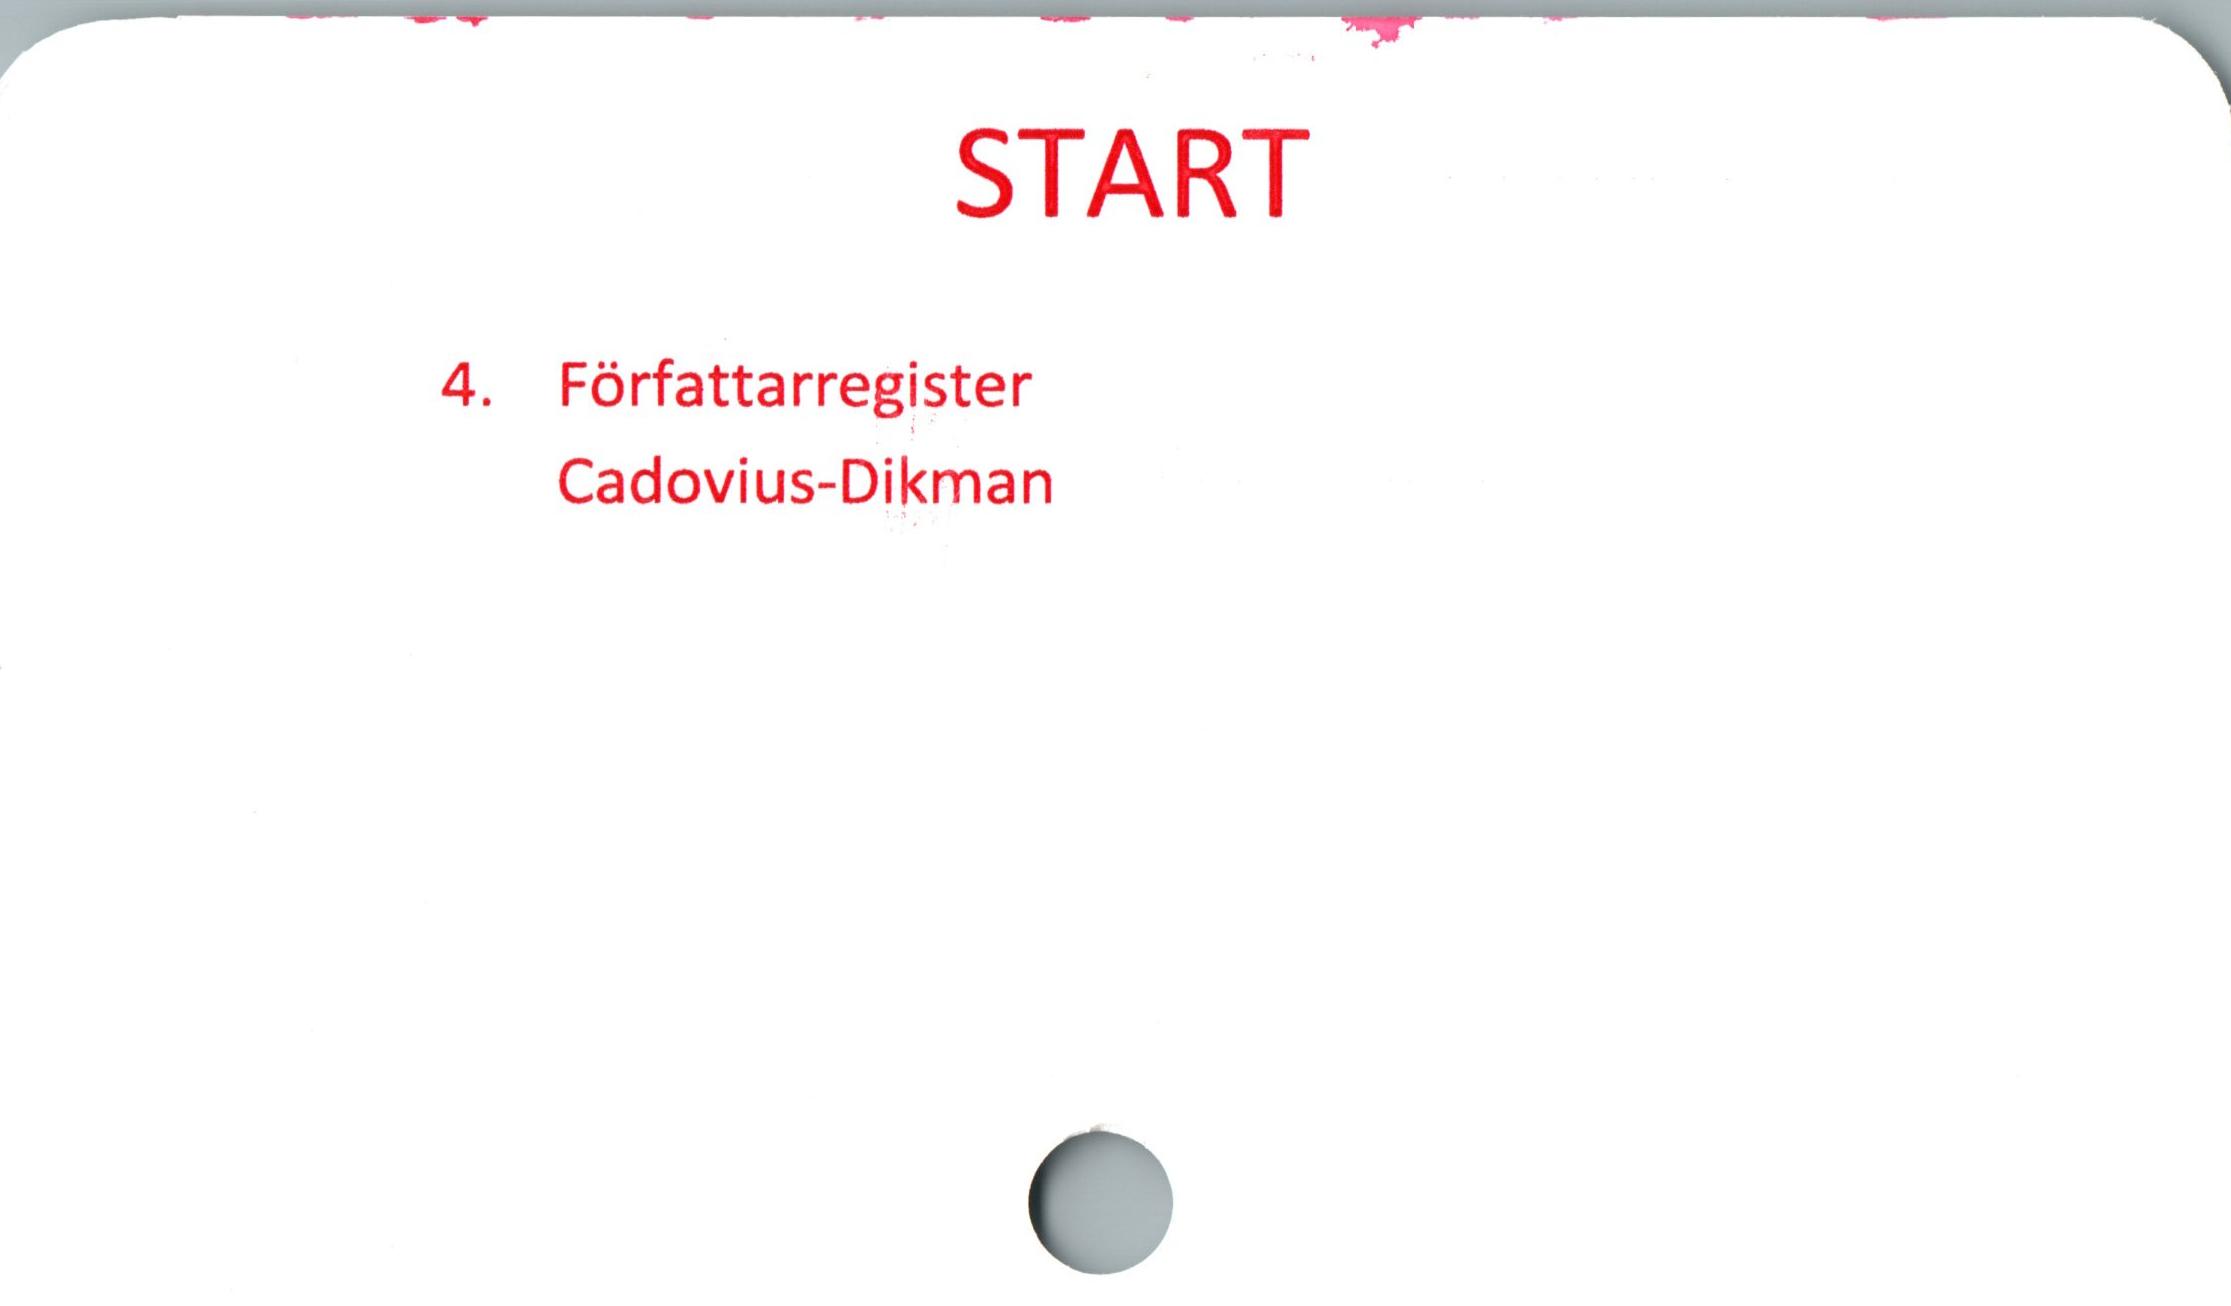  ﻿START

4. Författarregister
Cadovius-Dikman